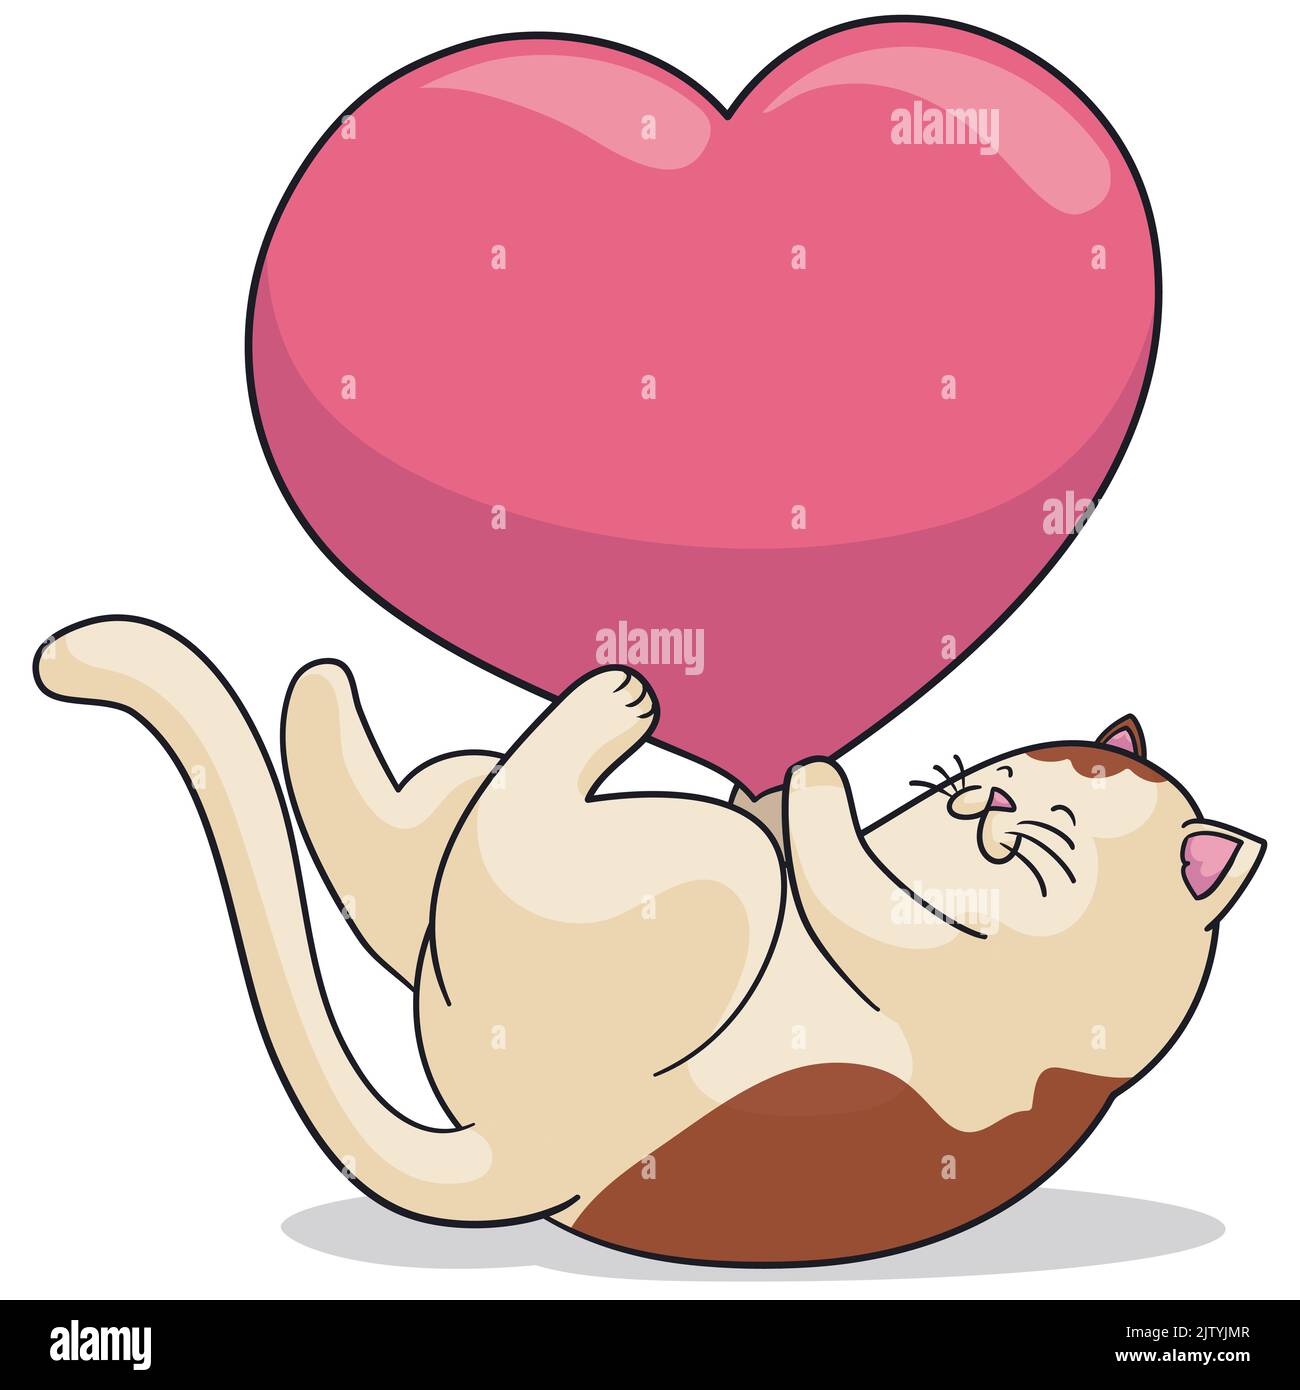 Die verspielte Katze lehnte sich auf den Rücken und spielte mit einem großen rosa Herz. Stock Vektor